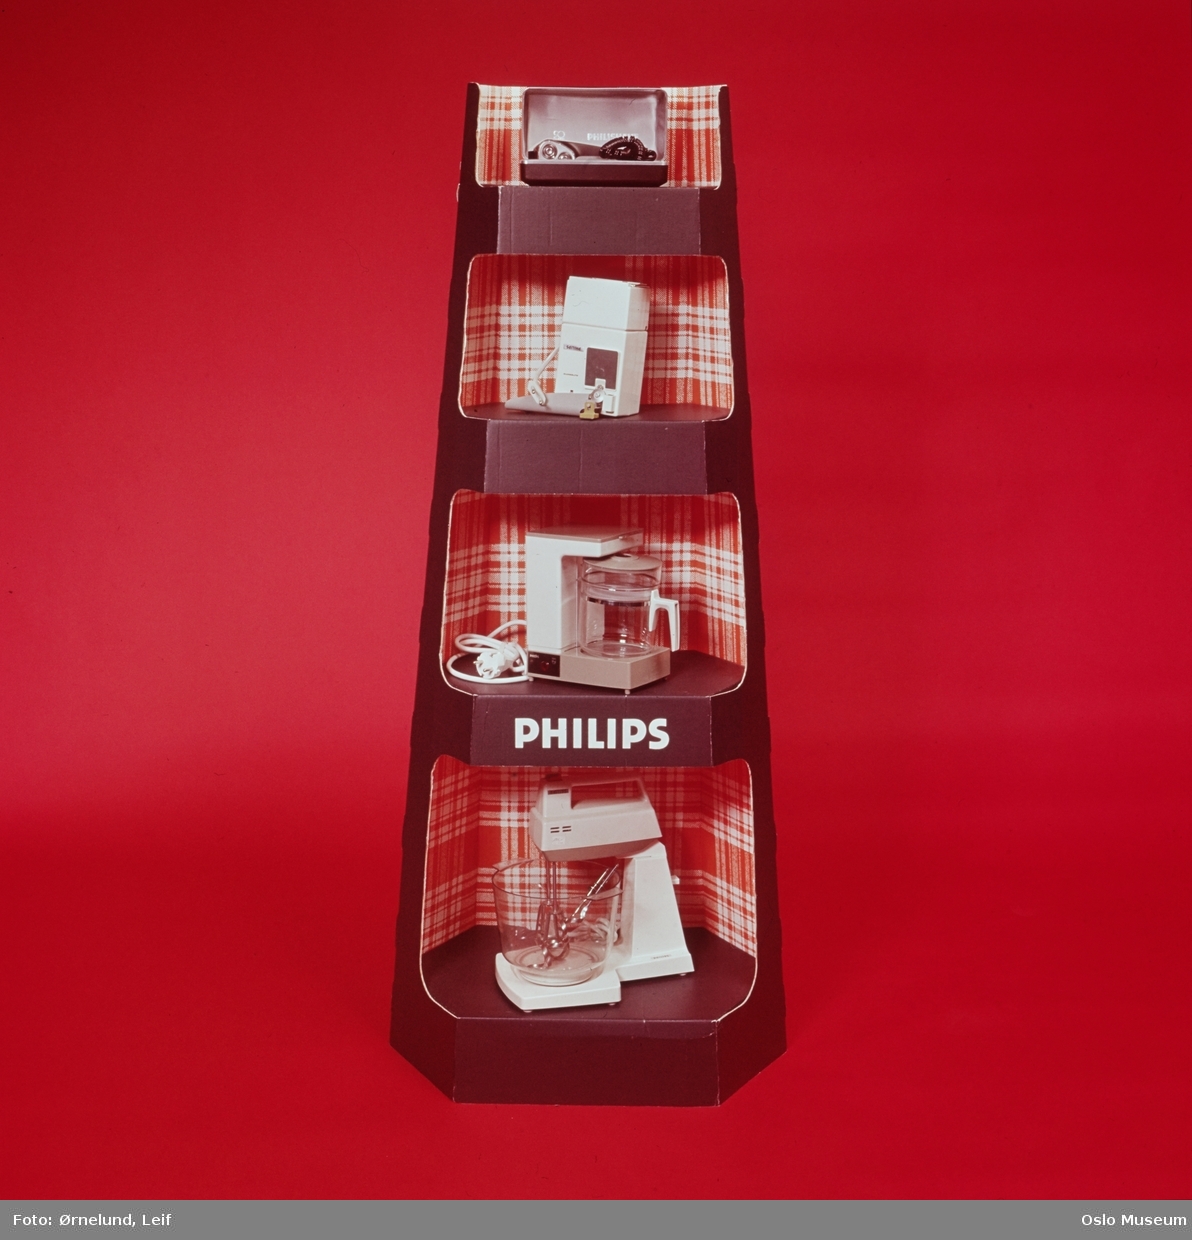 Den nederlandske elektronikkgiganten Philips hadde i perioder stor produksjon også i Norge, i tillegg til import og omsetning av produkter fra Philips' øvrige verdensomspennende produksjonsnett. Med dette er Philips fortsatt en gigant på mange ulike markeder fra belysning og småelektrisk utstyr, TV/radio/musikk til avansert medisinsk utstyr.

Norsk Aksjeselskap Philips ble etablert i 1923 som salgsfirma for Philips glødelamper produsert Nederland. Etter hvert stor egenproduksjon i Norge, først og fremst ved glødelampefabrikken Philips Fabrikk Norsk A/S i Arendal og Radio Industri A/S på Ryen (Sandstuveien) i Oslo.